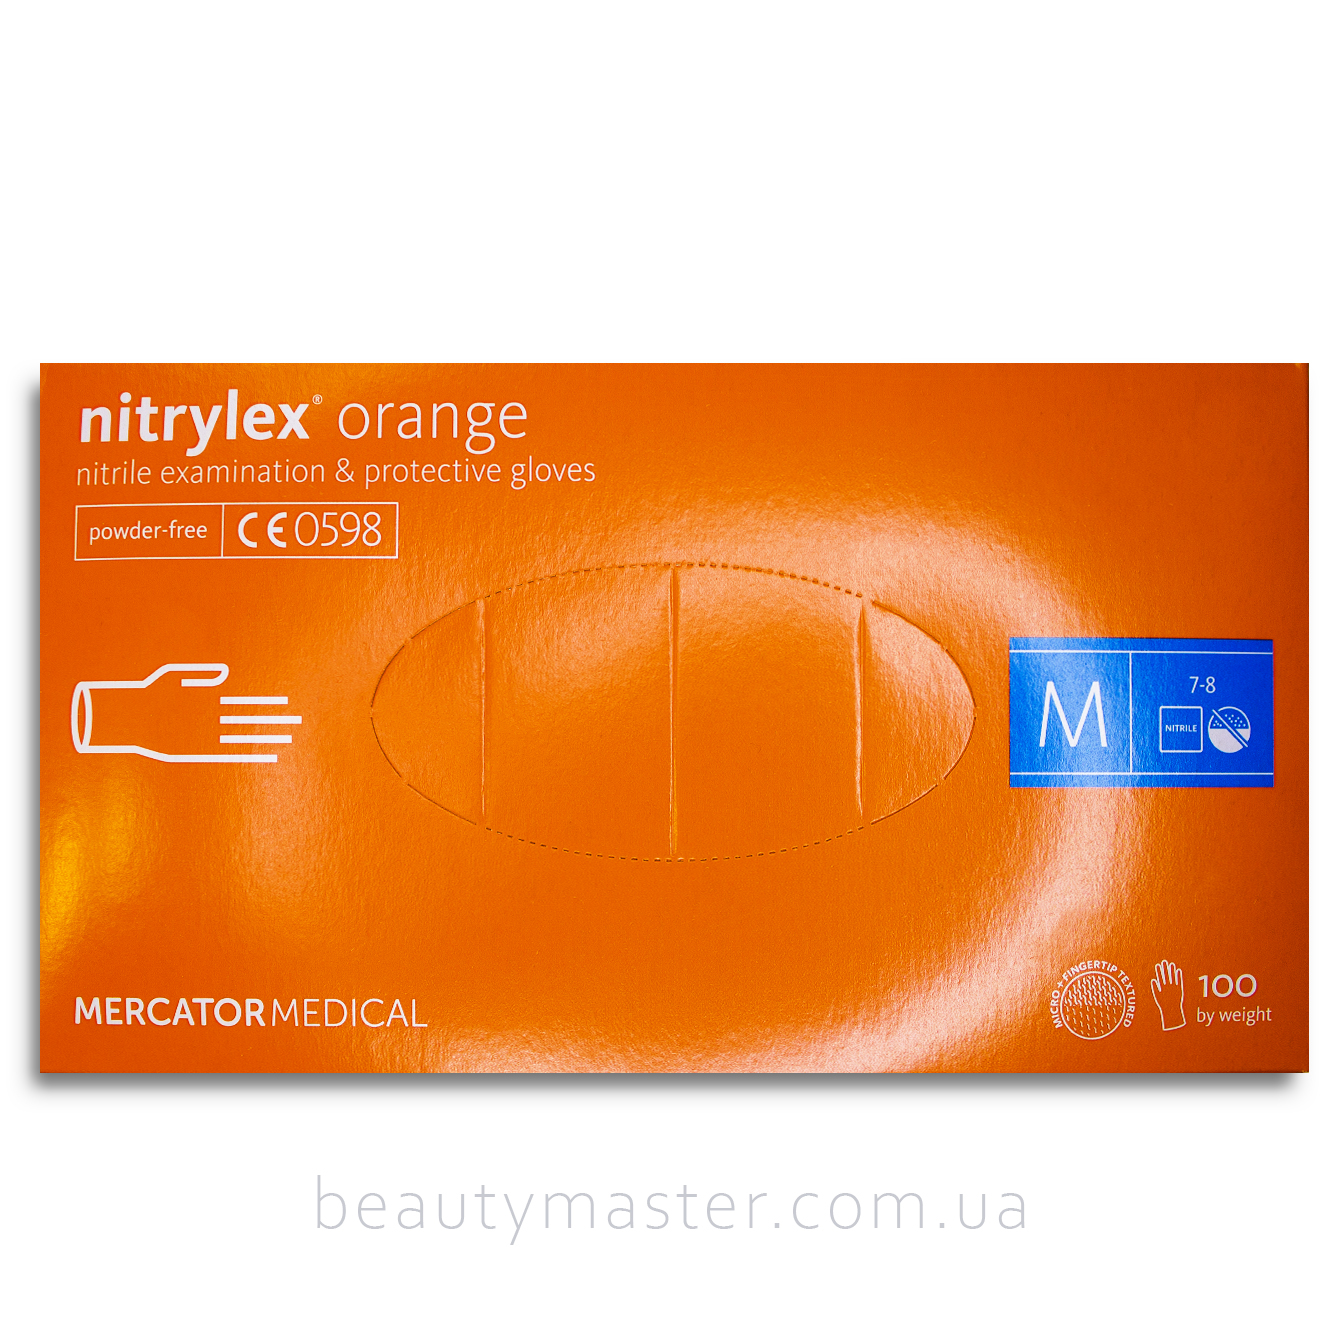 Перчатки nitrylex Orange нитриловые, оранжевые, р.M, пачка 100шт